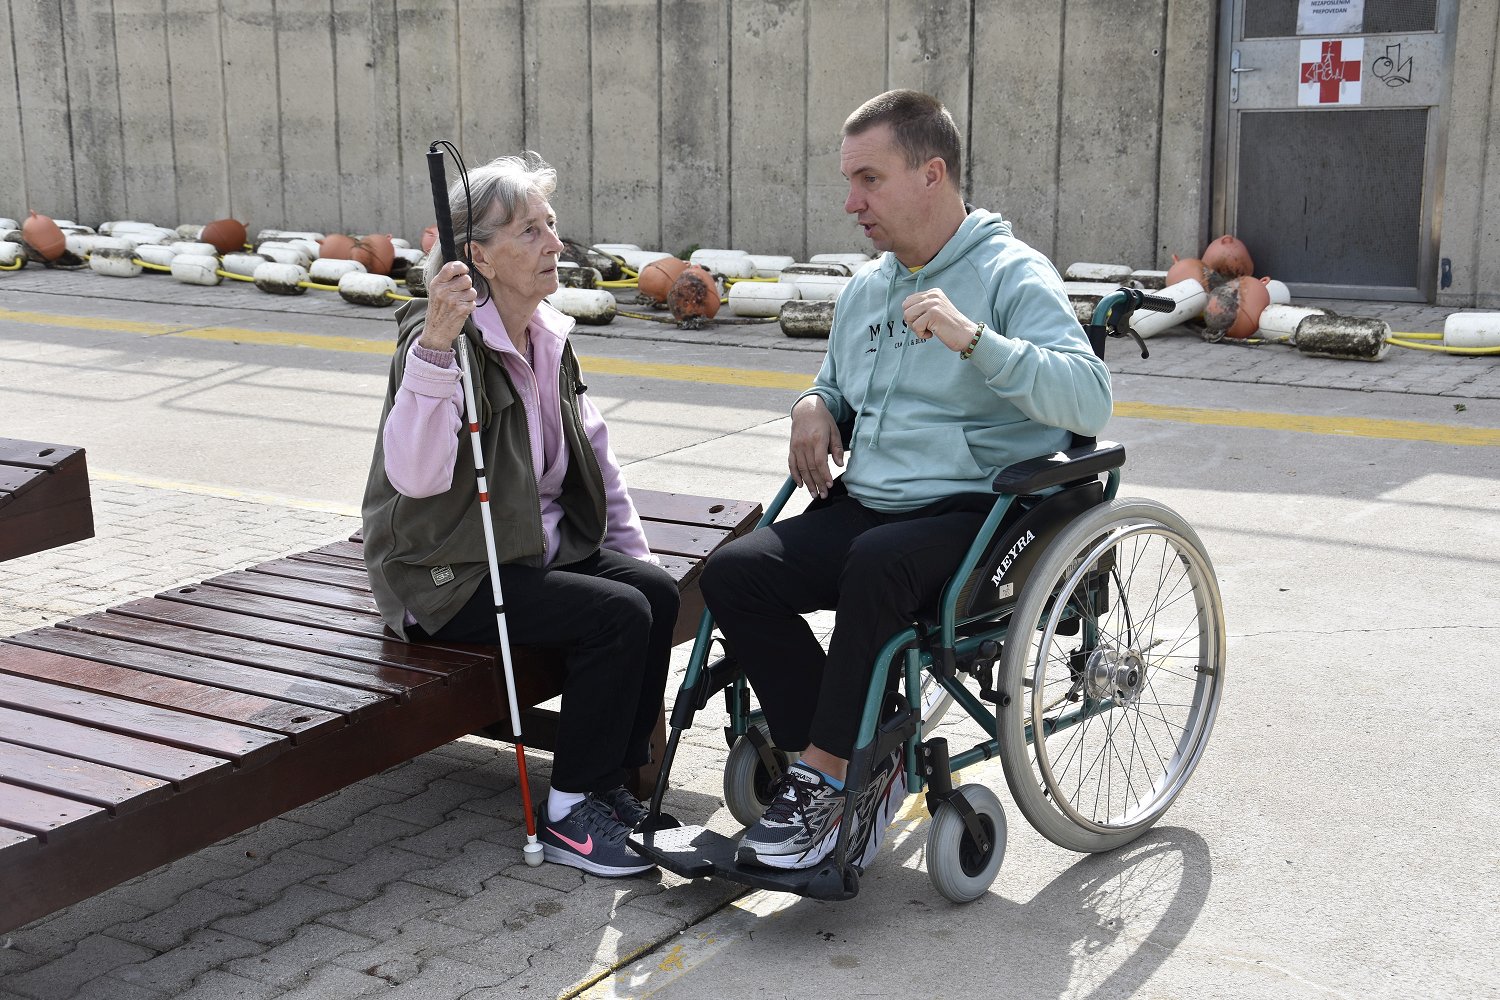 Fotografija prikazuje osebo z belo palico ter osebo na invalidskem vozičku med pogovorom.